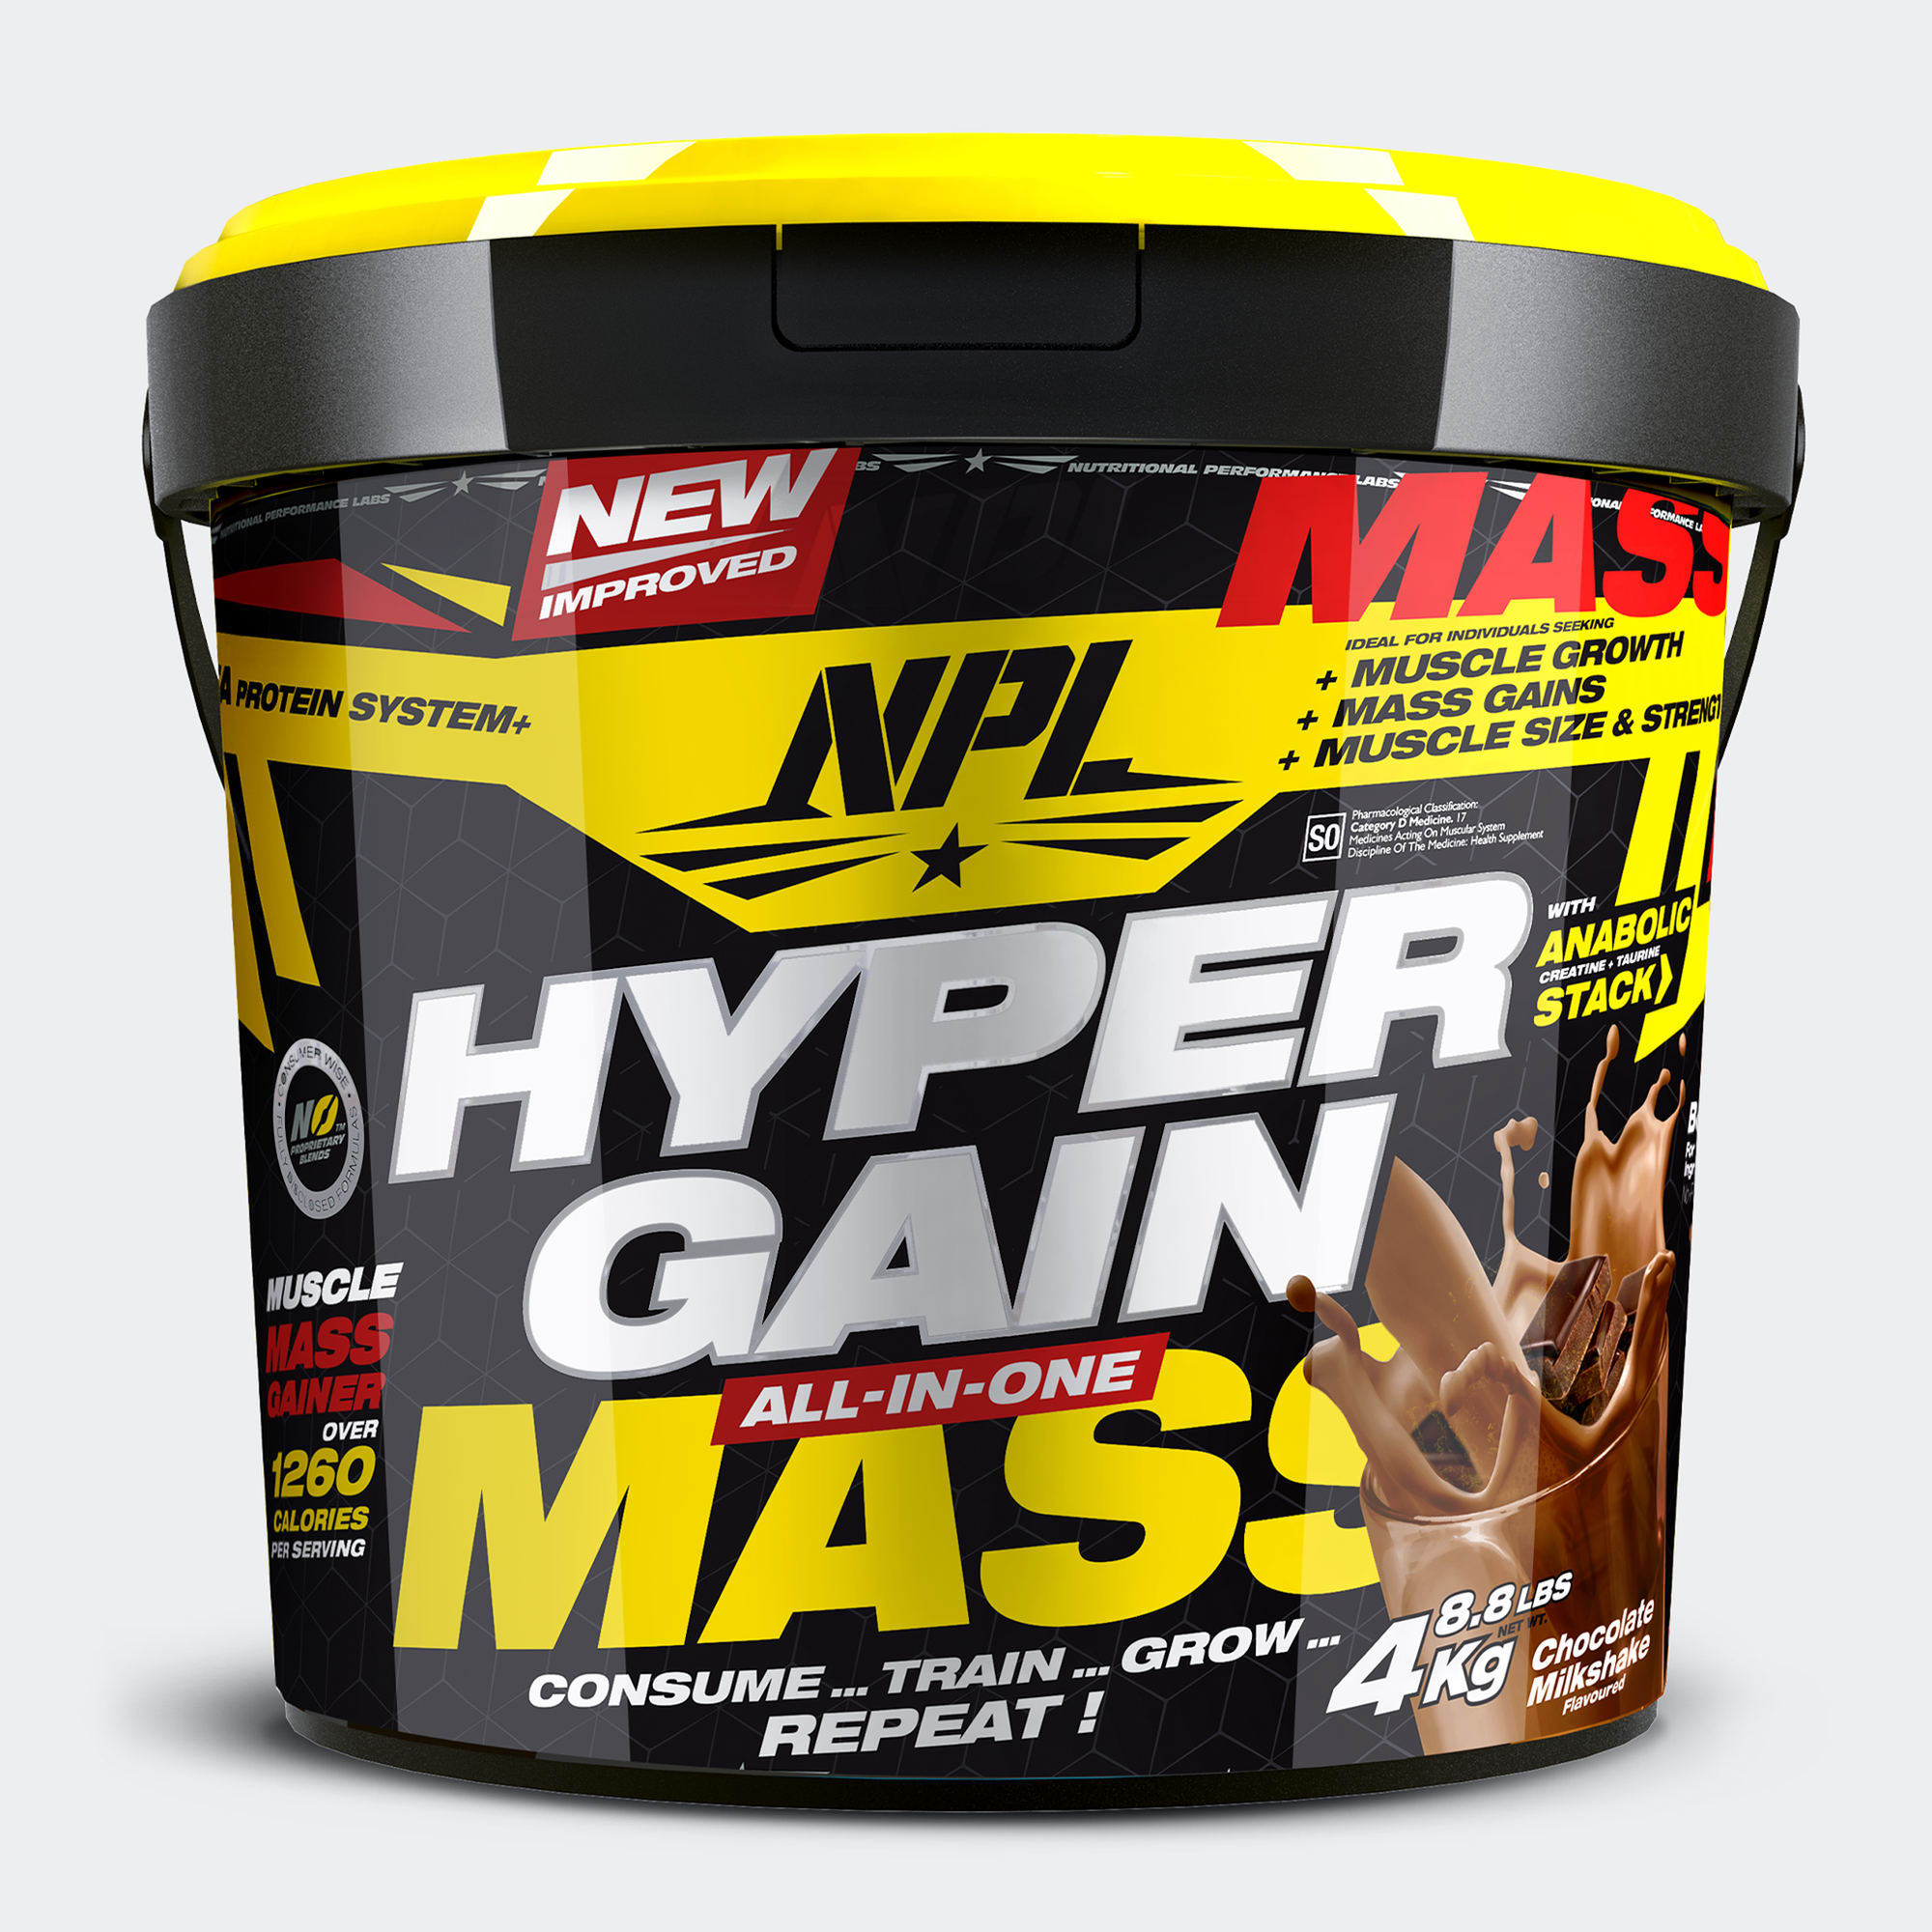 NPL Hyper Gain Mass: Unleash Heavy-Duty Muscle Growth